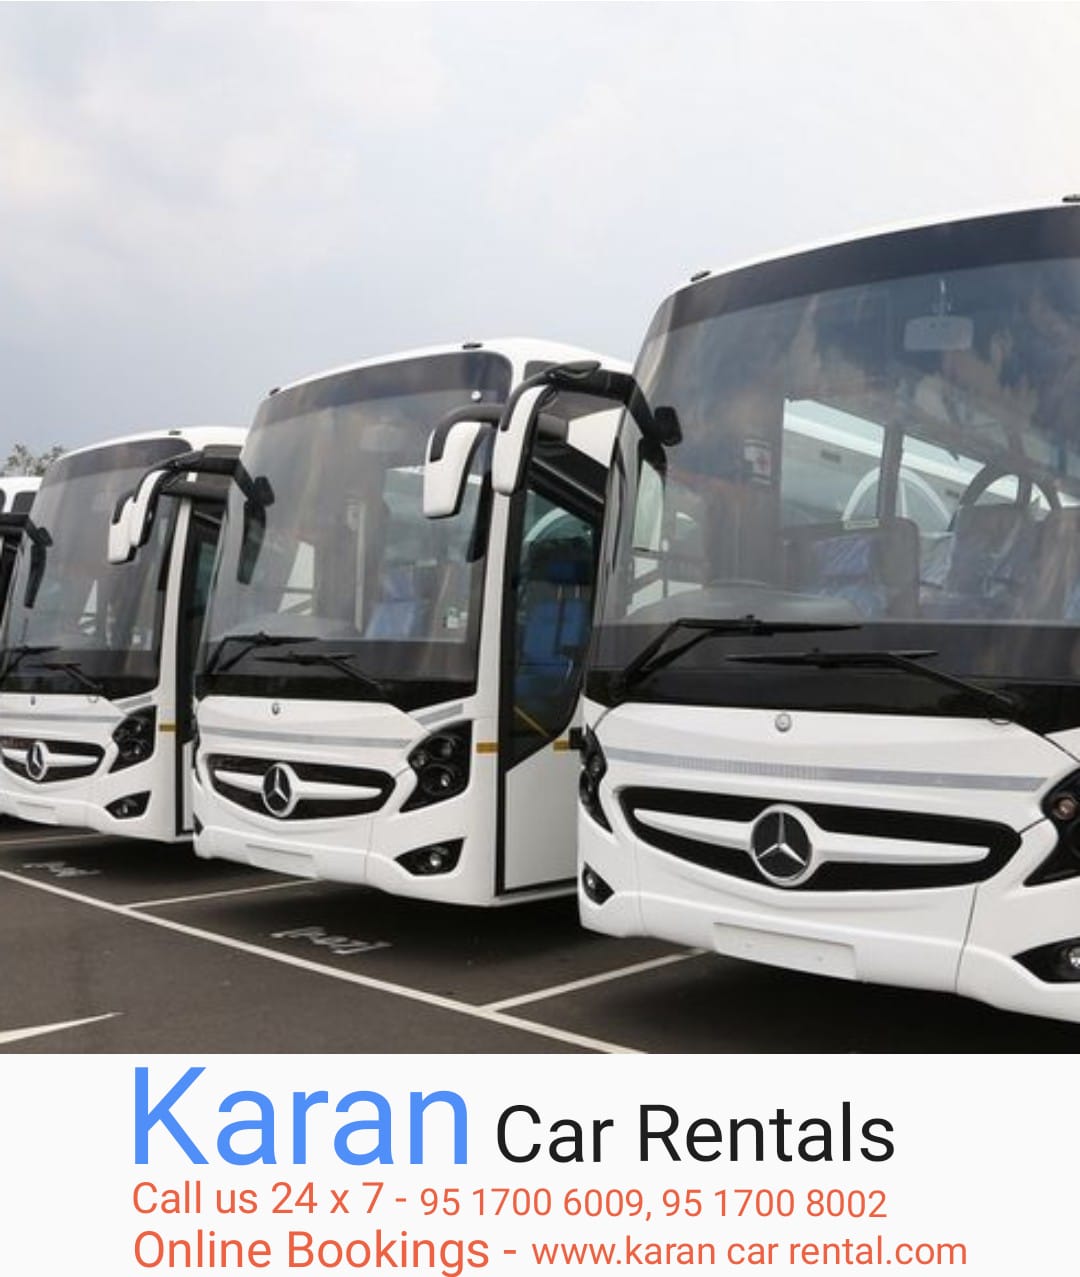 amritsar tourism bus